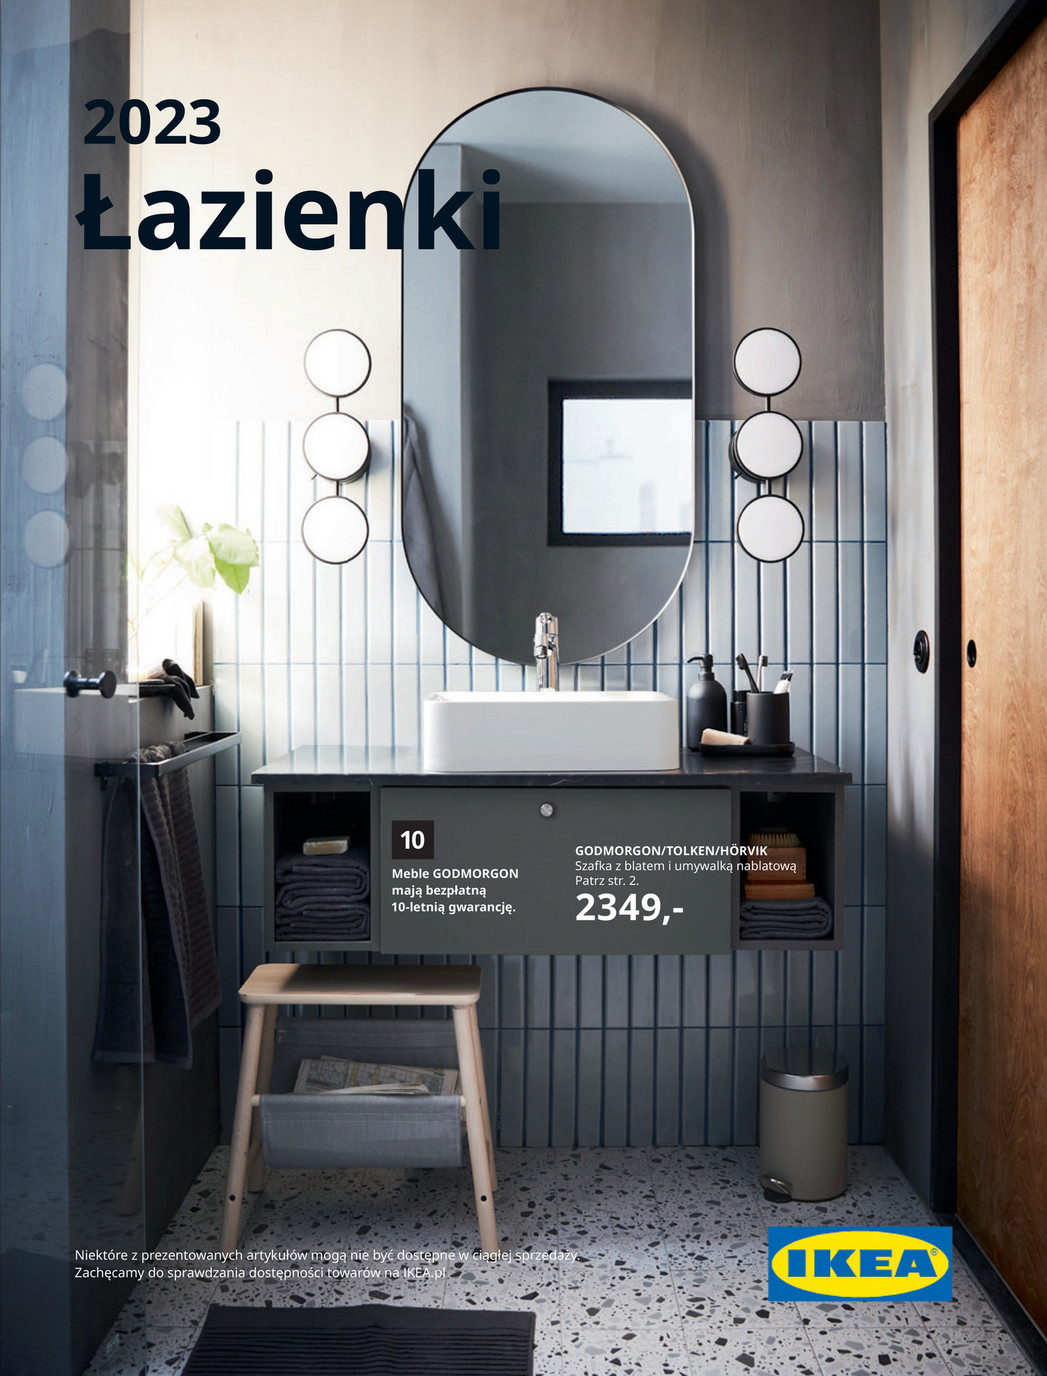 Łazienki 2023... - Ikea Gazetka promocyjna - W tym tygodniu - oferta 01/02/2023 - 01/03/2023